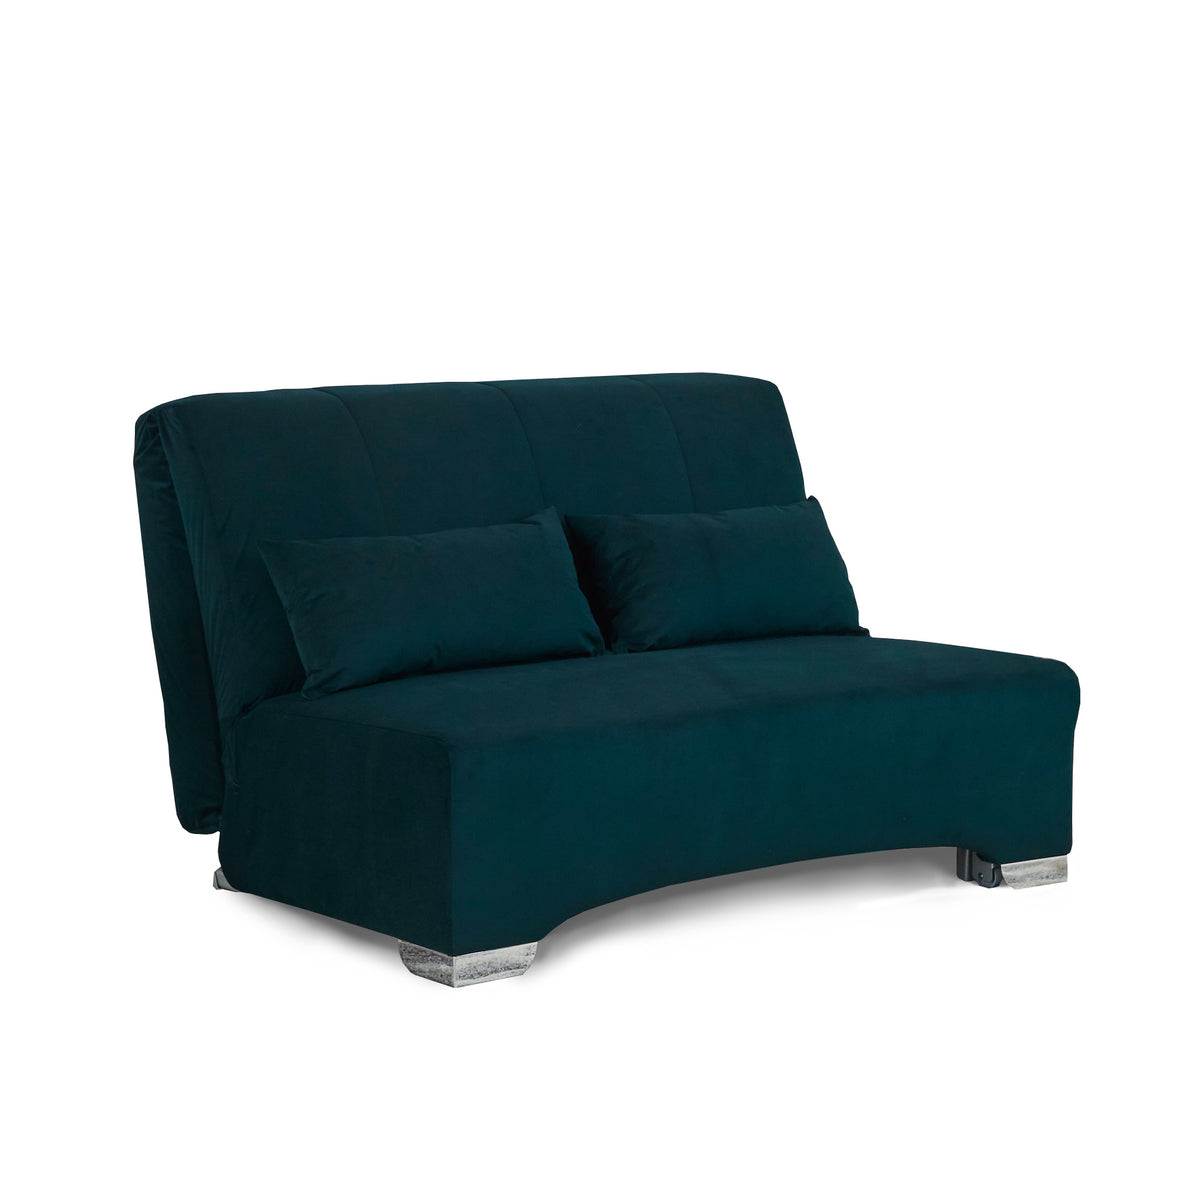 Cortez Bottle Green Velvet Upholstered Pull Out Sofa Bed from Roseland Furniture